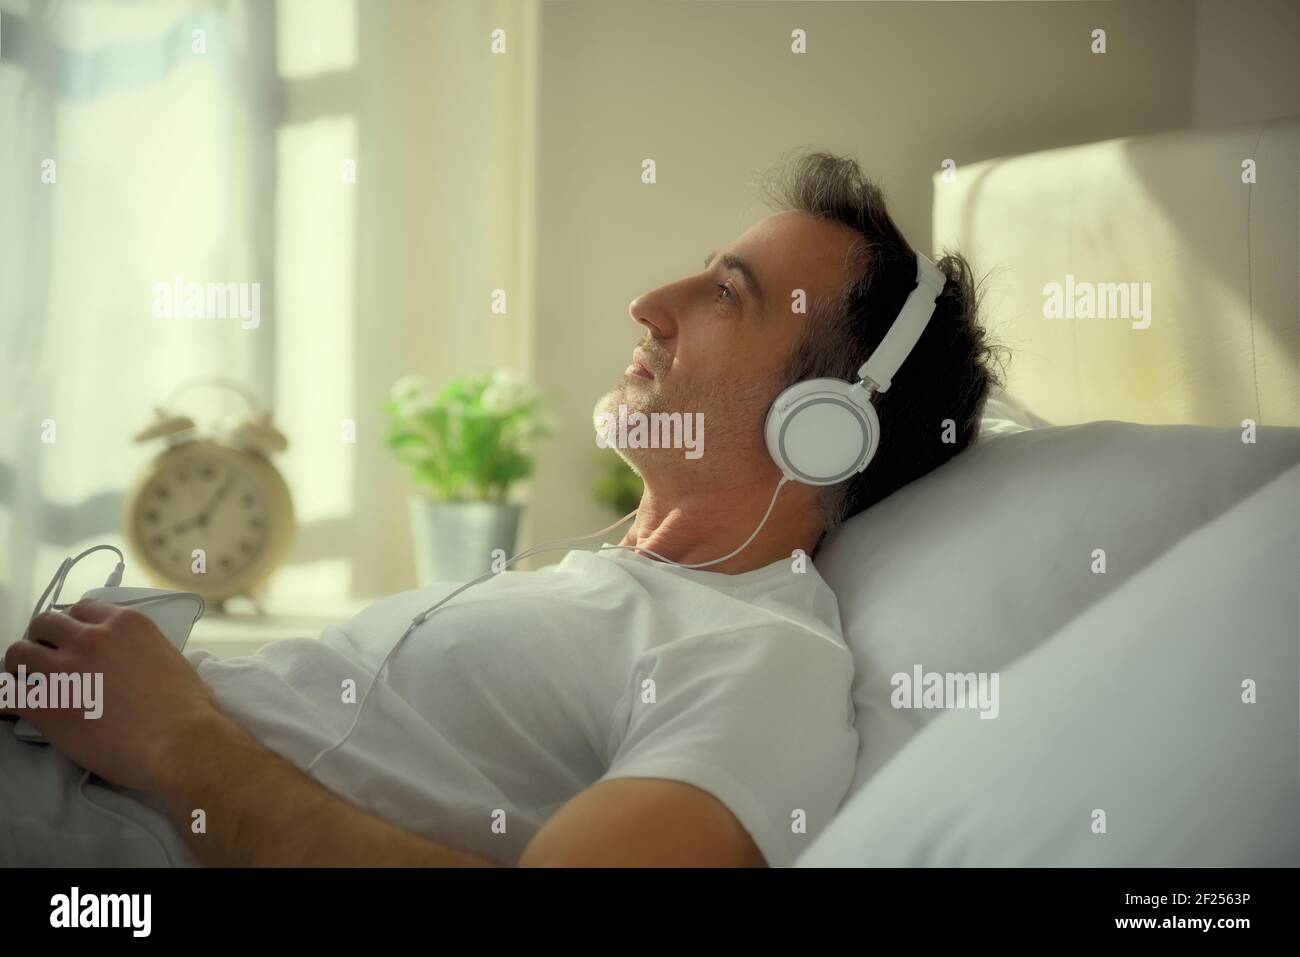 Melancholischer erwachsener Mann mit verlorenen Augen, der Musik mit hört Weiße Kopfhörer vom Handy, das auf dem Bett liegt, das hineingeht Abendlicht Stockfoto